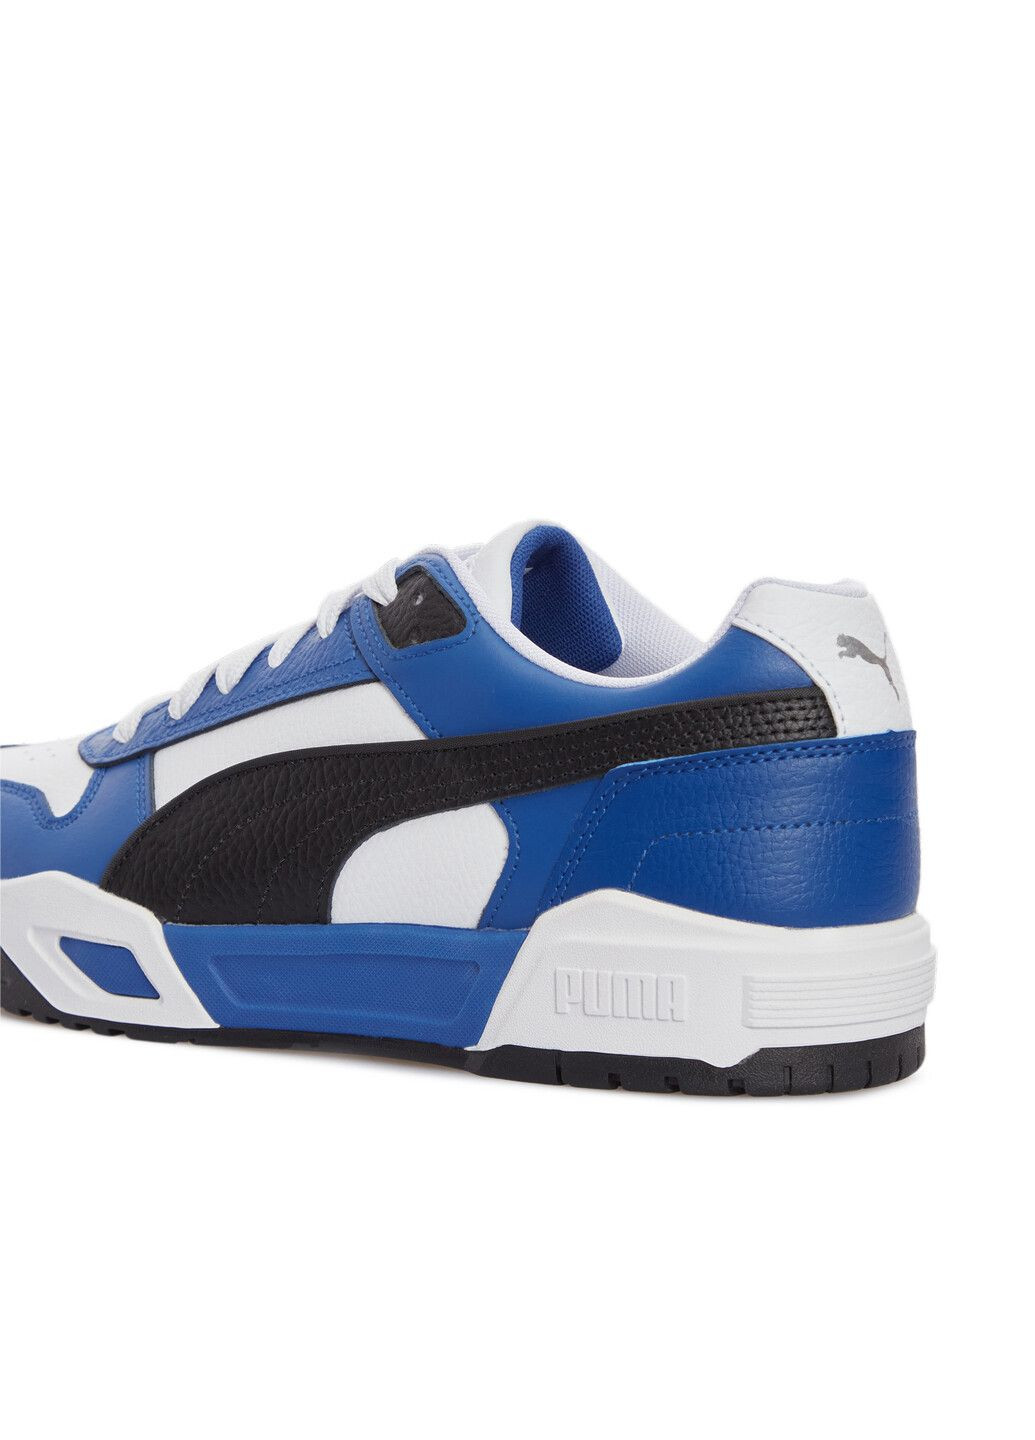 Синие всесезонные кеды rbd tech classic unisex sneakers Puma